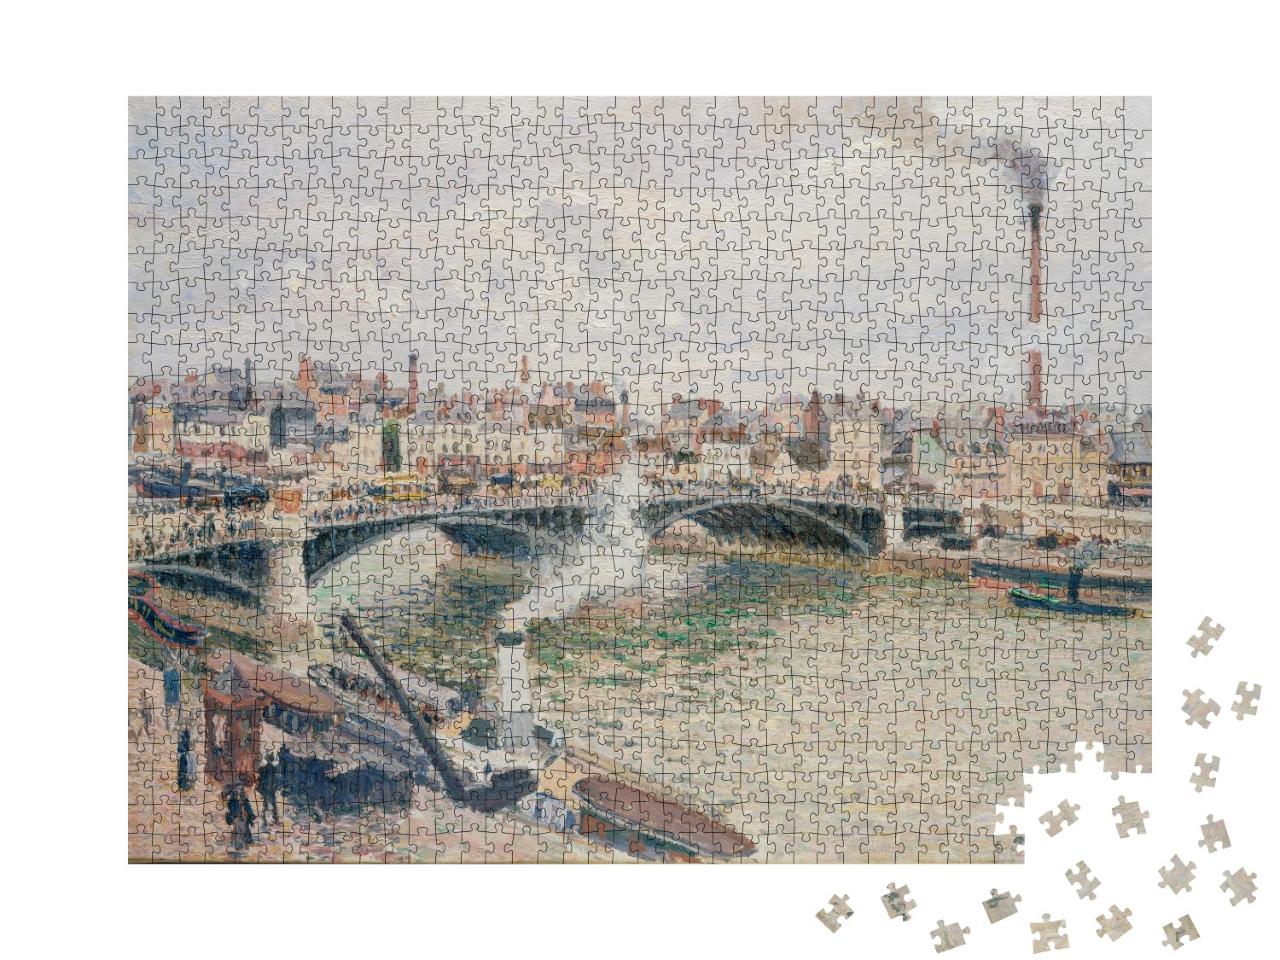 Puzzle de 1000 pièces « Camille Pissarro - Matin, un jour couvert, Rouen »